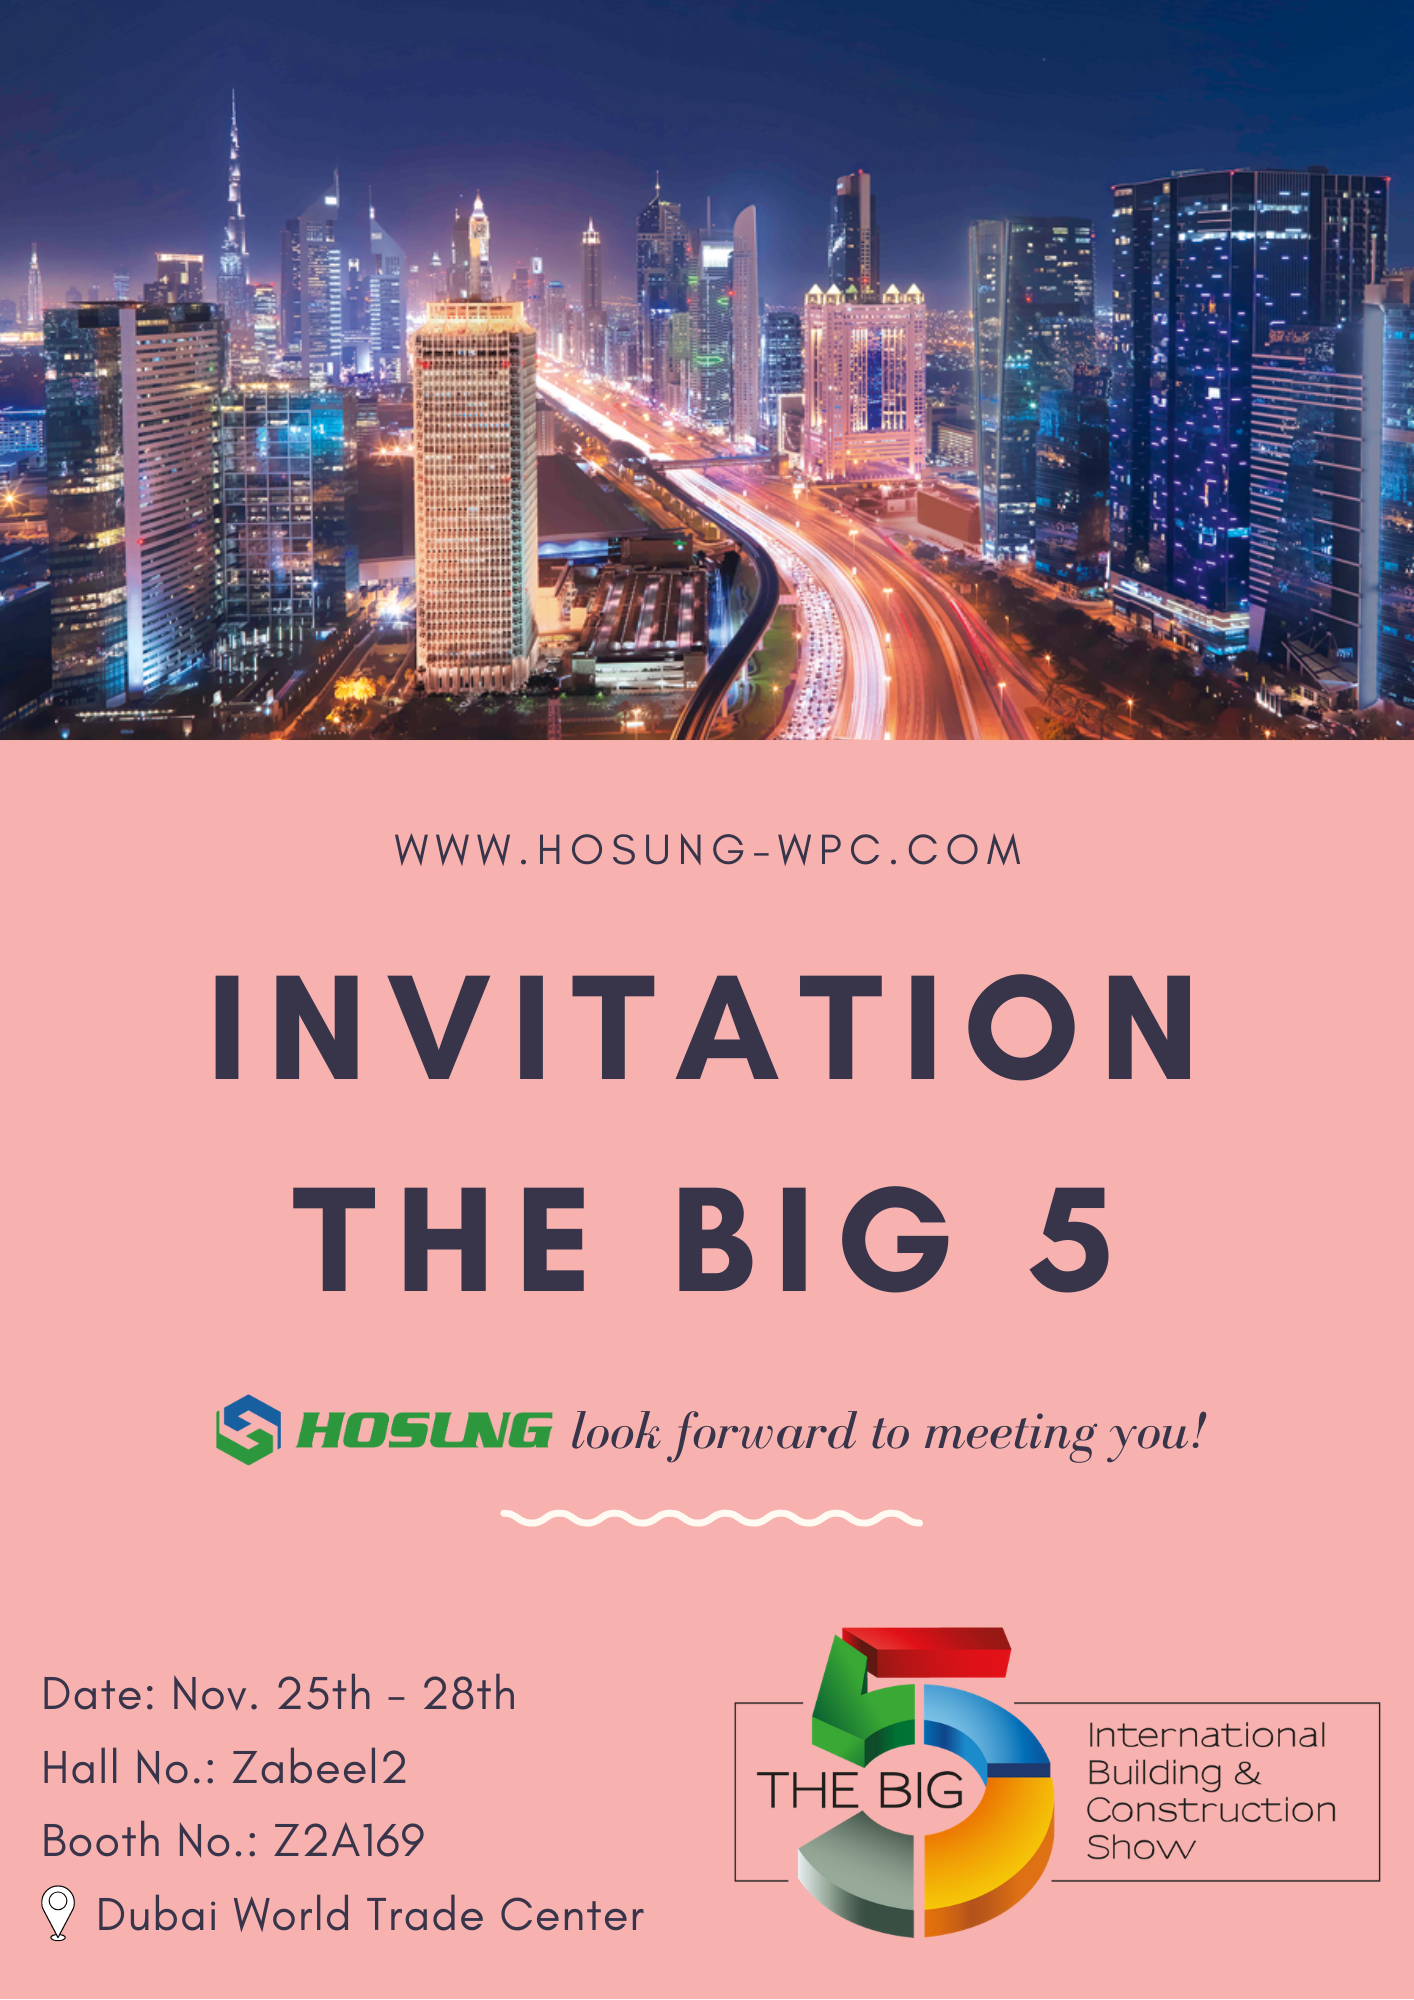 The BIG 5 Fair in Dubai 2019 – HOSUNG Booth No.: Z2A169